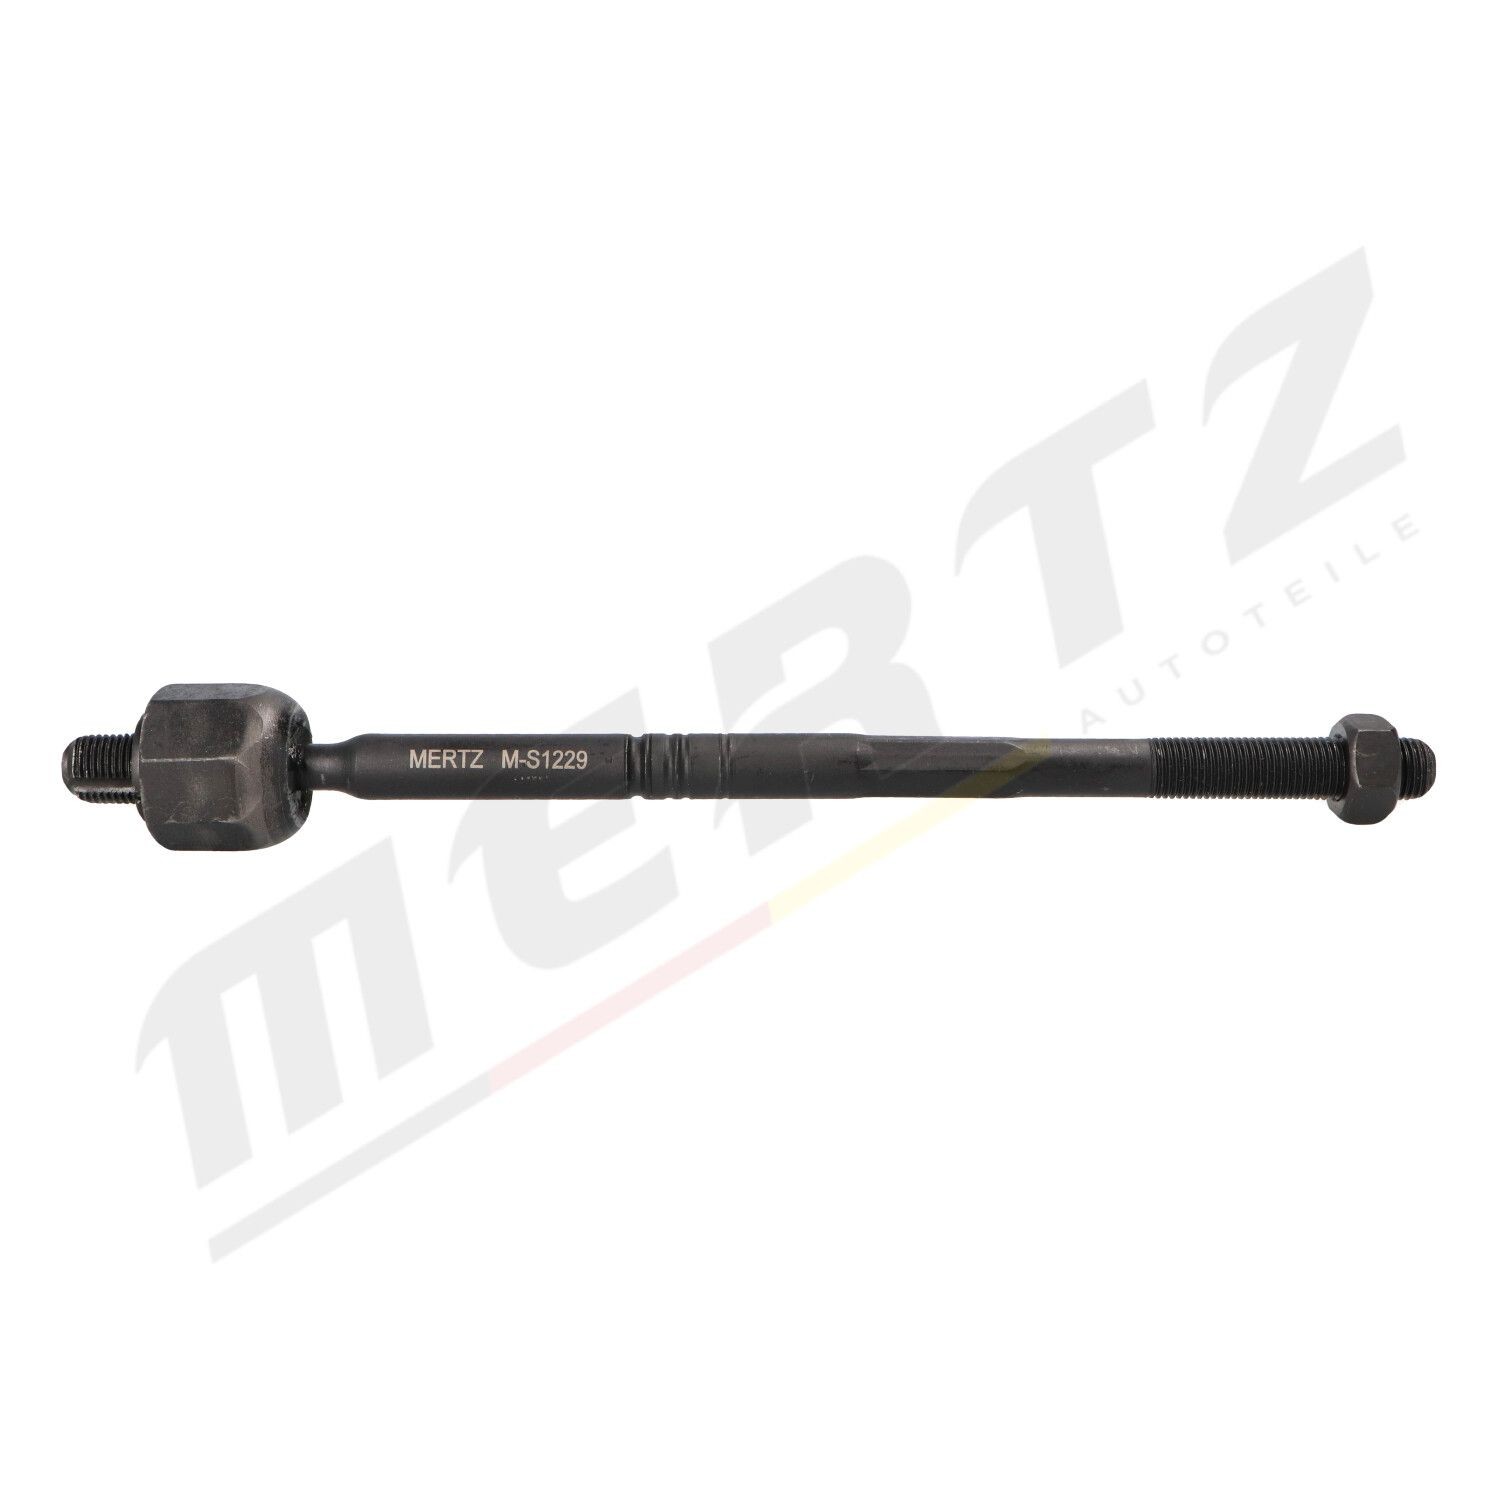 MERTZ M-S1229 OPEL ASTRA 2011 Inner track rod